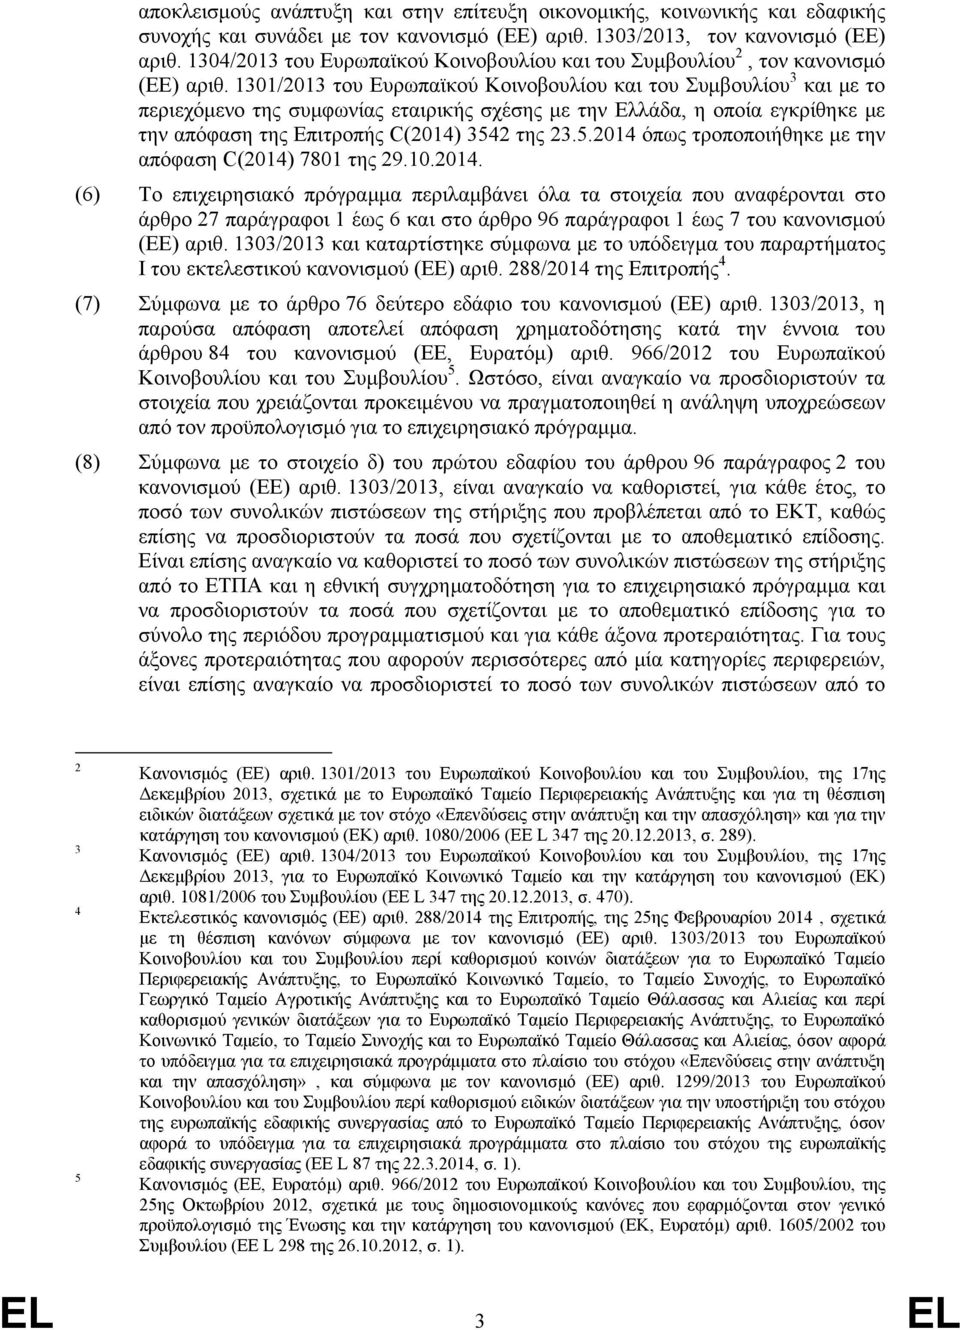 1301/2013 του Ευρωπαϊκού Κοινοβουλίου και του Συμβουλίου 3 και με το περιεχόμενο της συμφωνίας εταιρικής σχέσης με την Ελλάδα, η οποία εγκρίθηκε με την απόφαση της Επιτροπής C(2014) 354